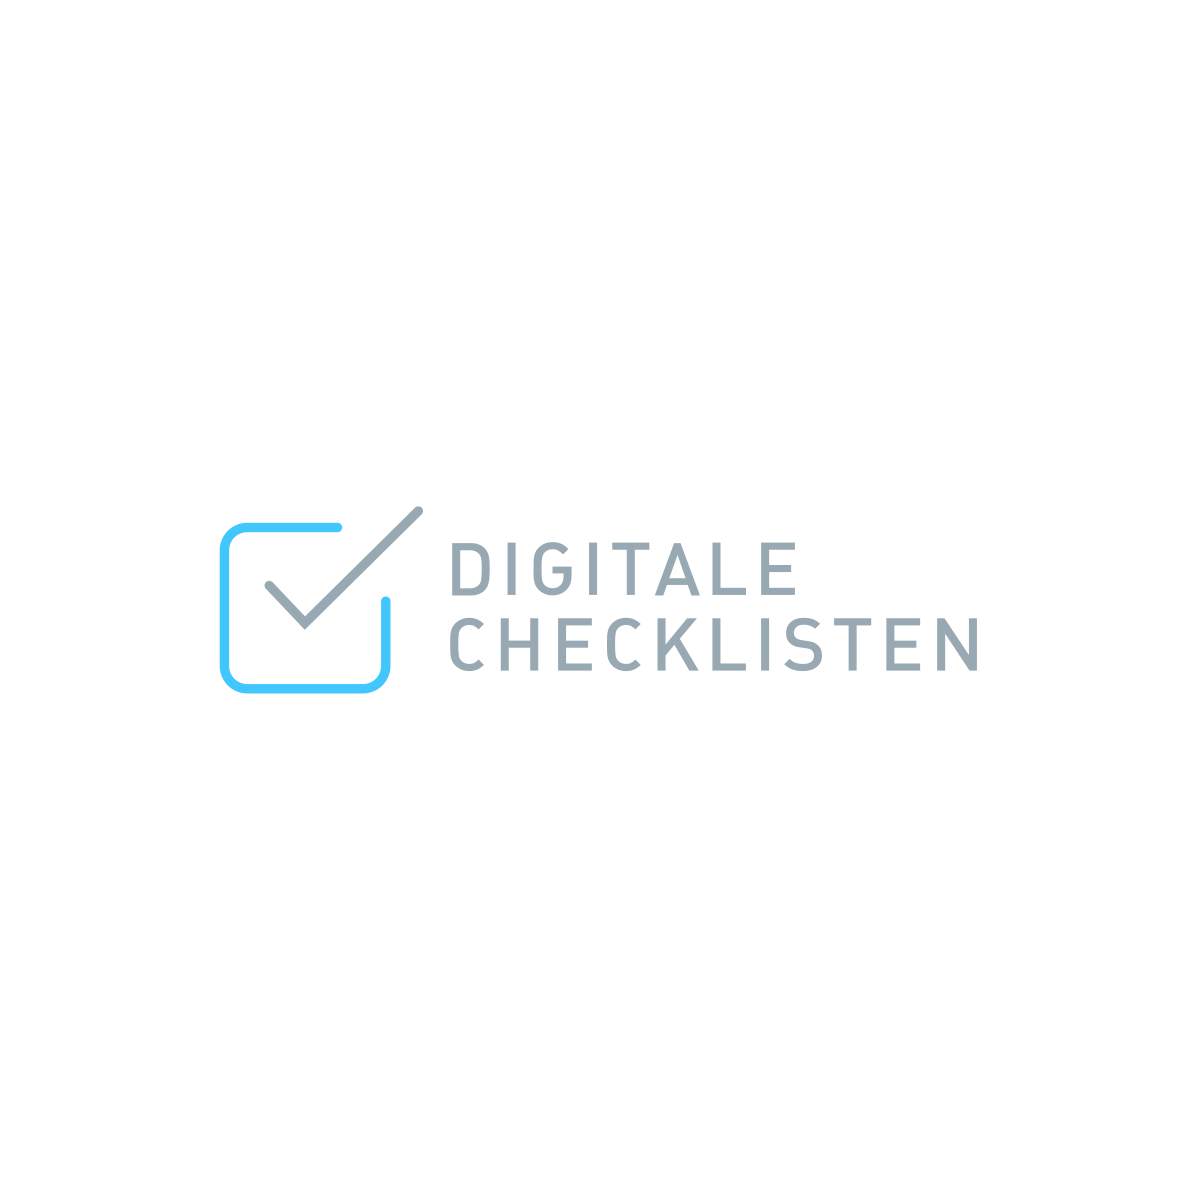 (c) Digitalechecklisten.nl